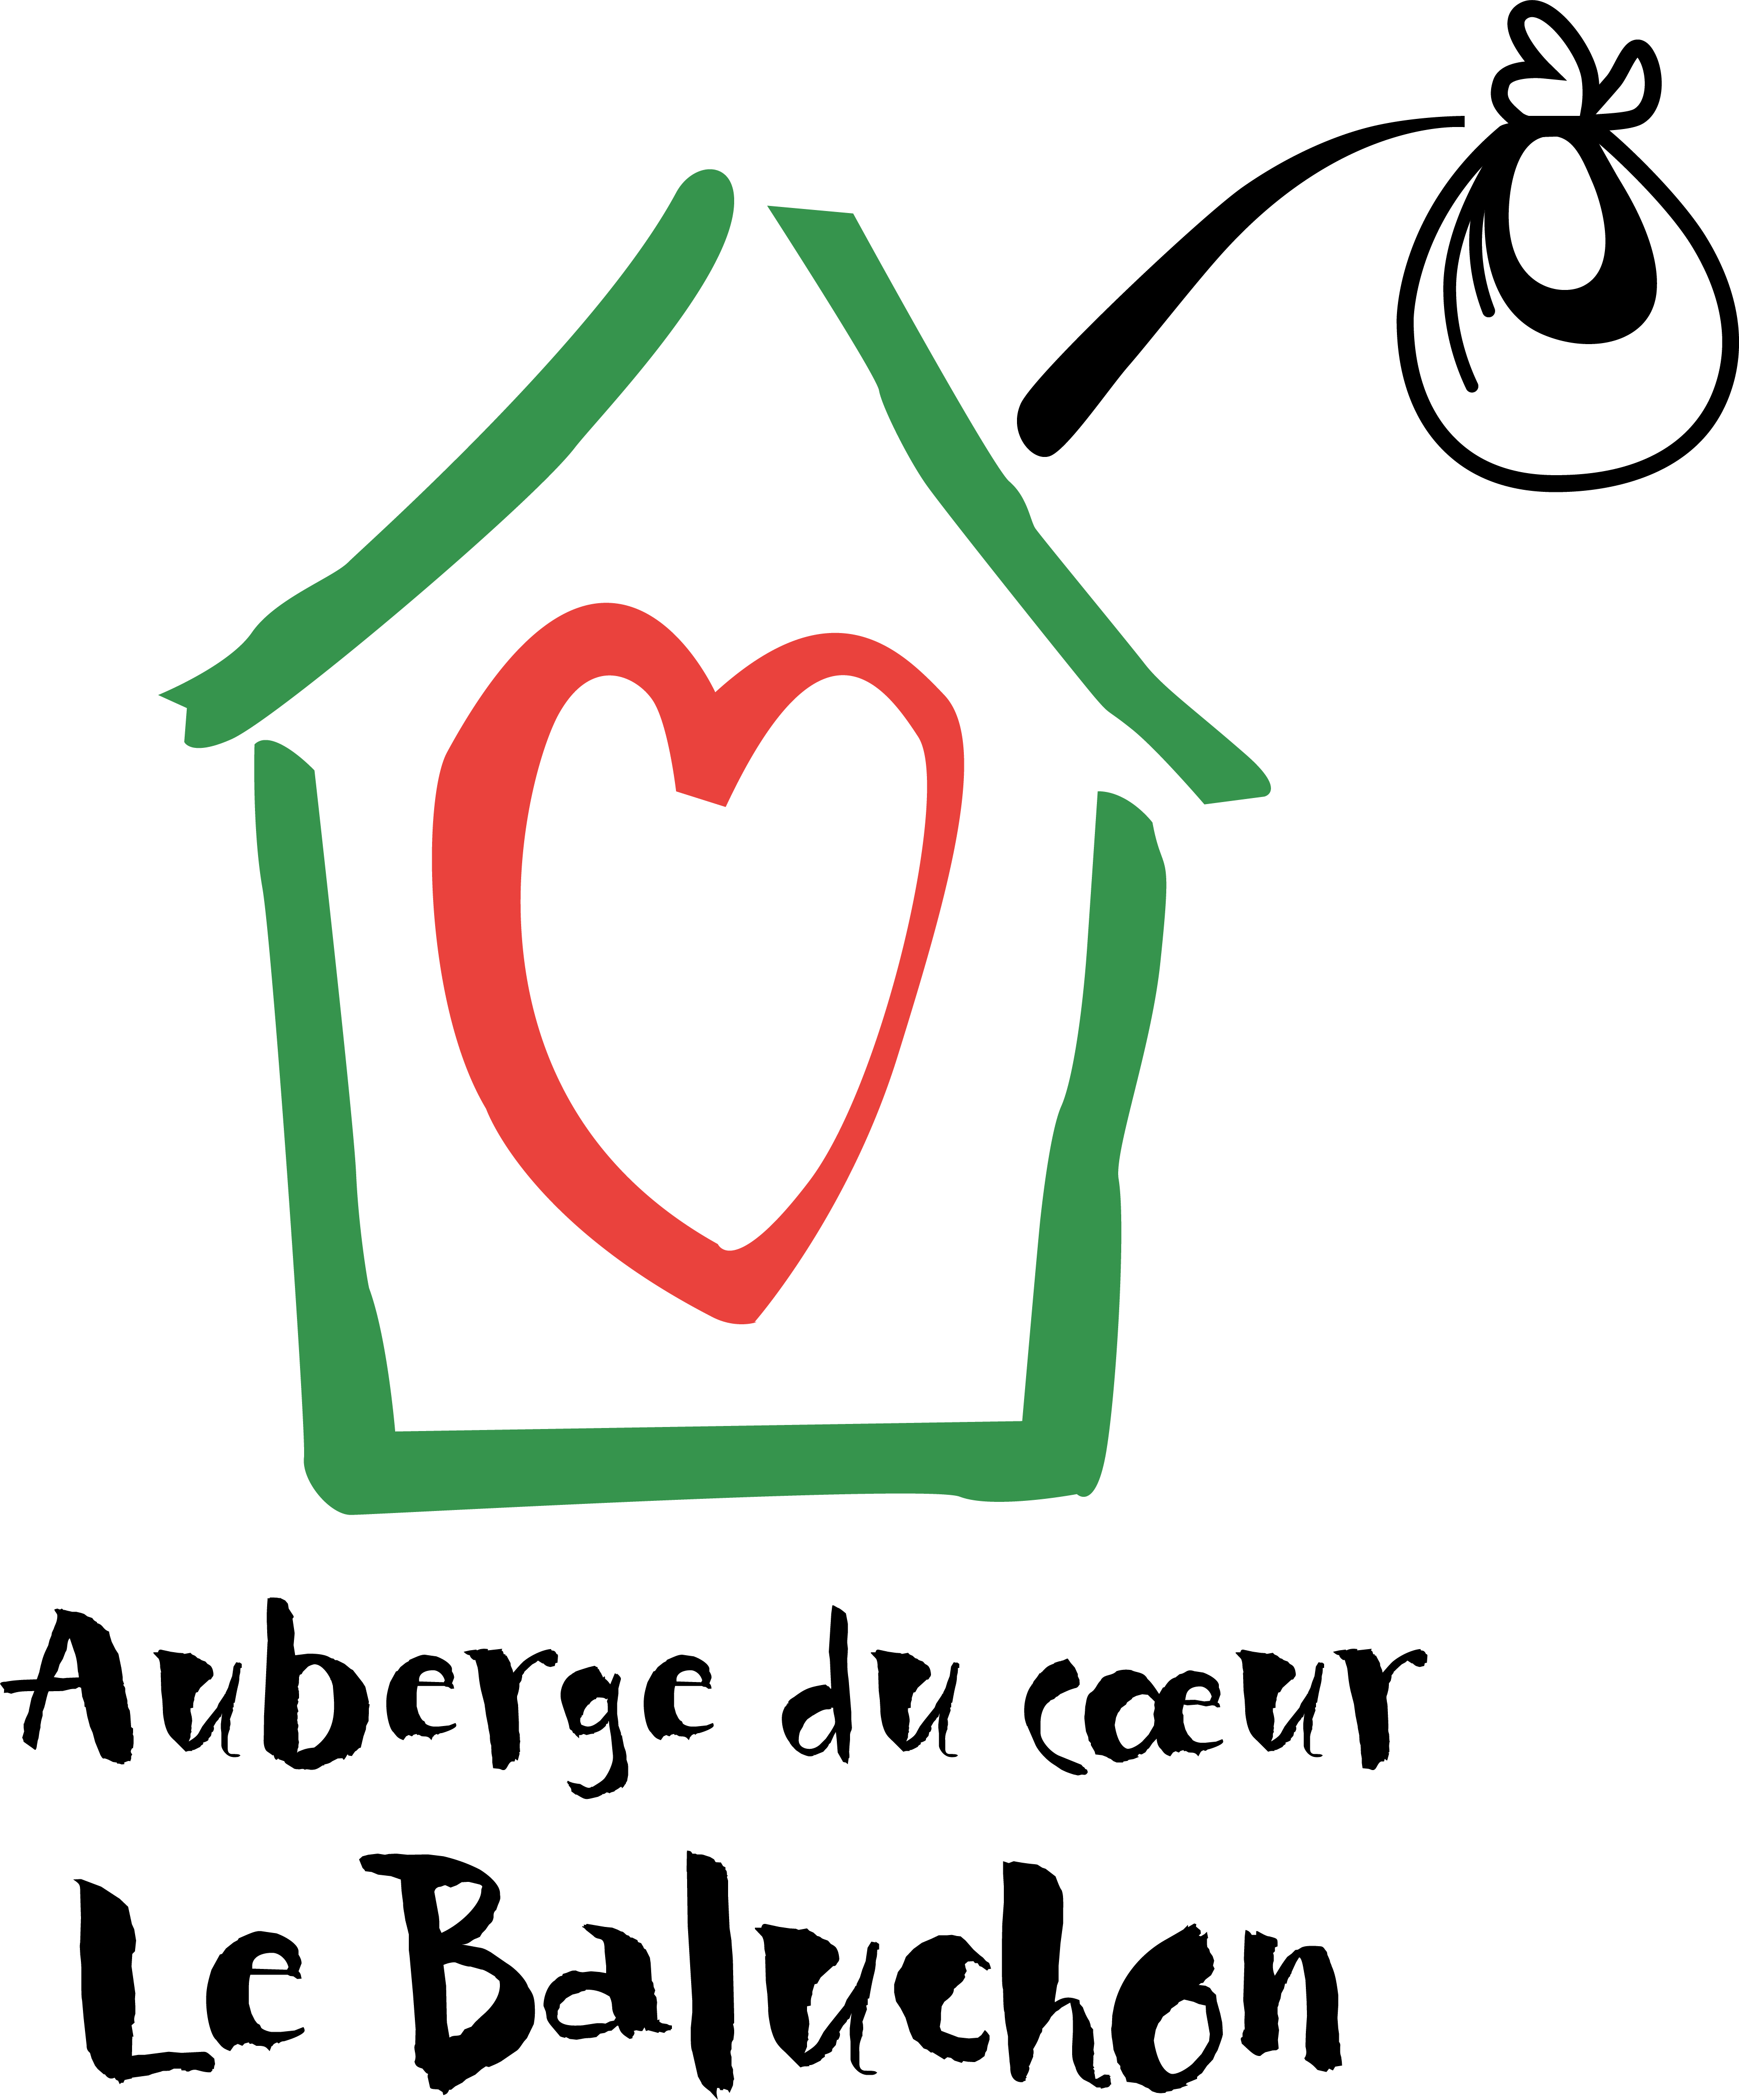 Logo de l'Auberge du coeur Le Baluchon, une ressource du répertoire Assisto